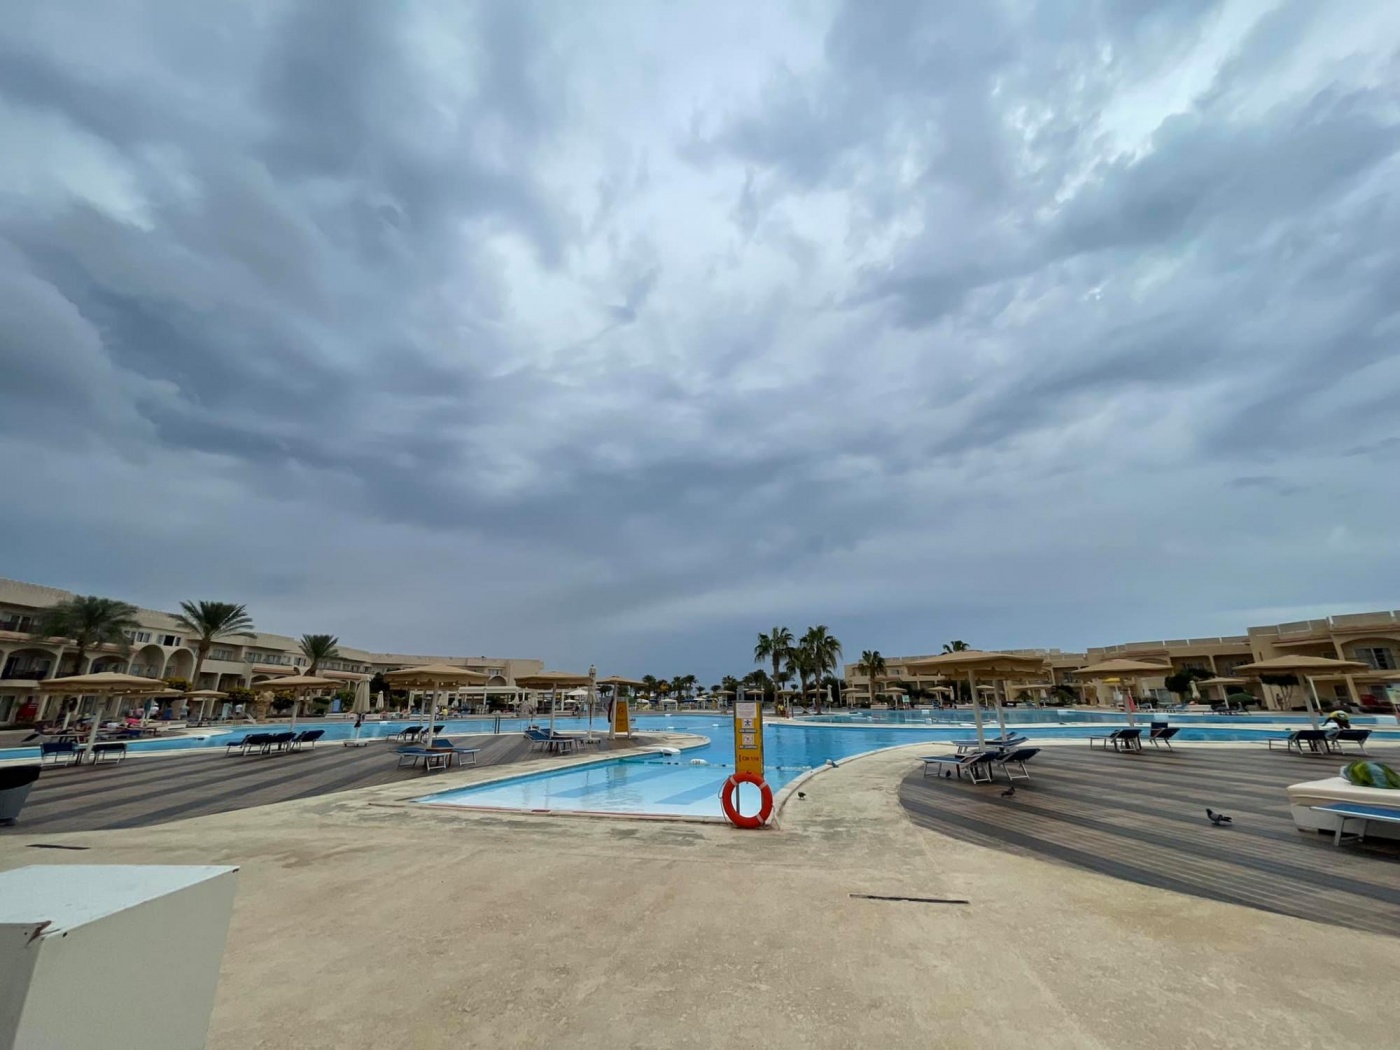 Ливни, град, наводнения: аномальная погода накрыла курорты Египта